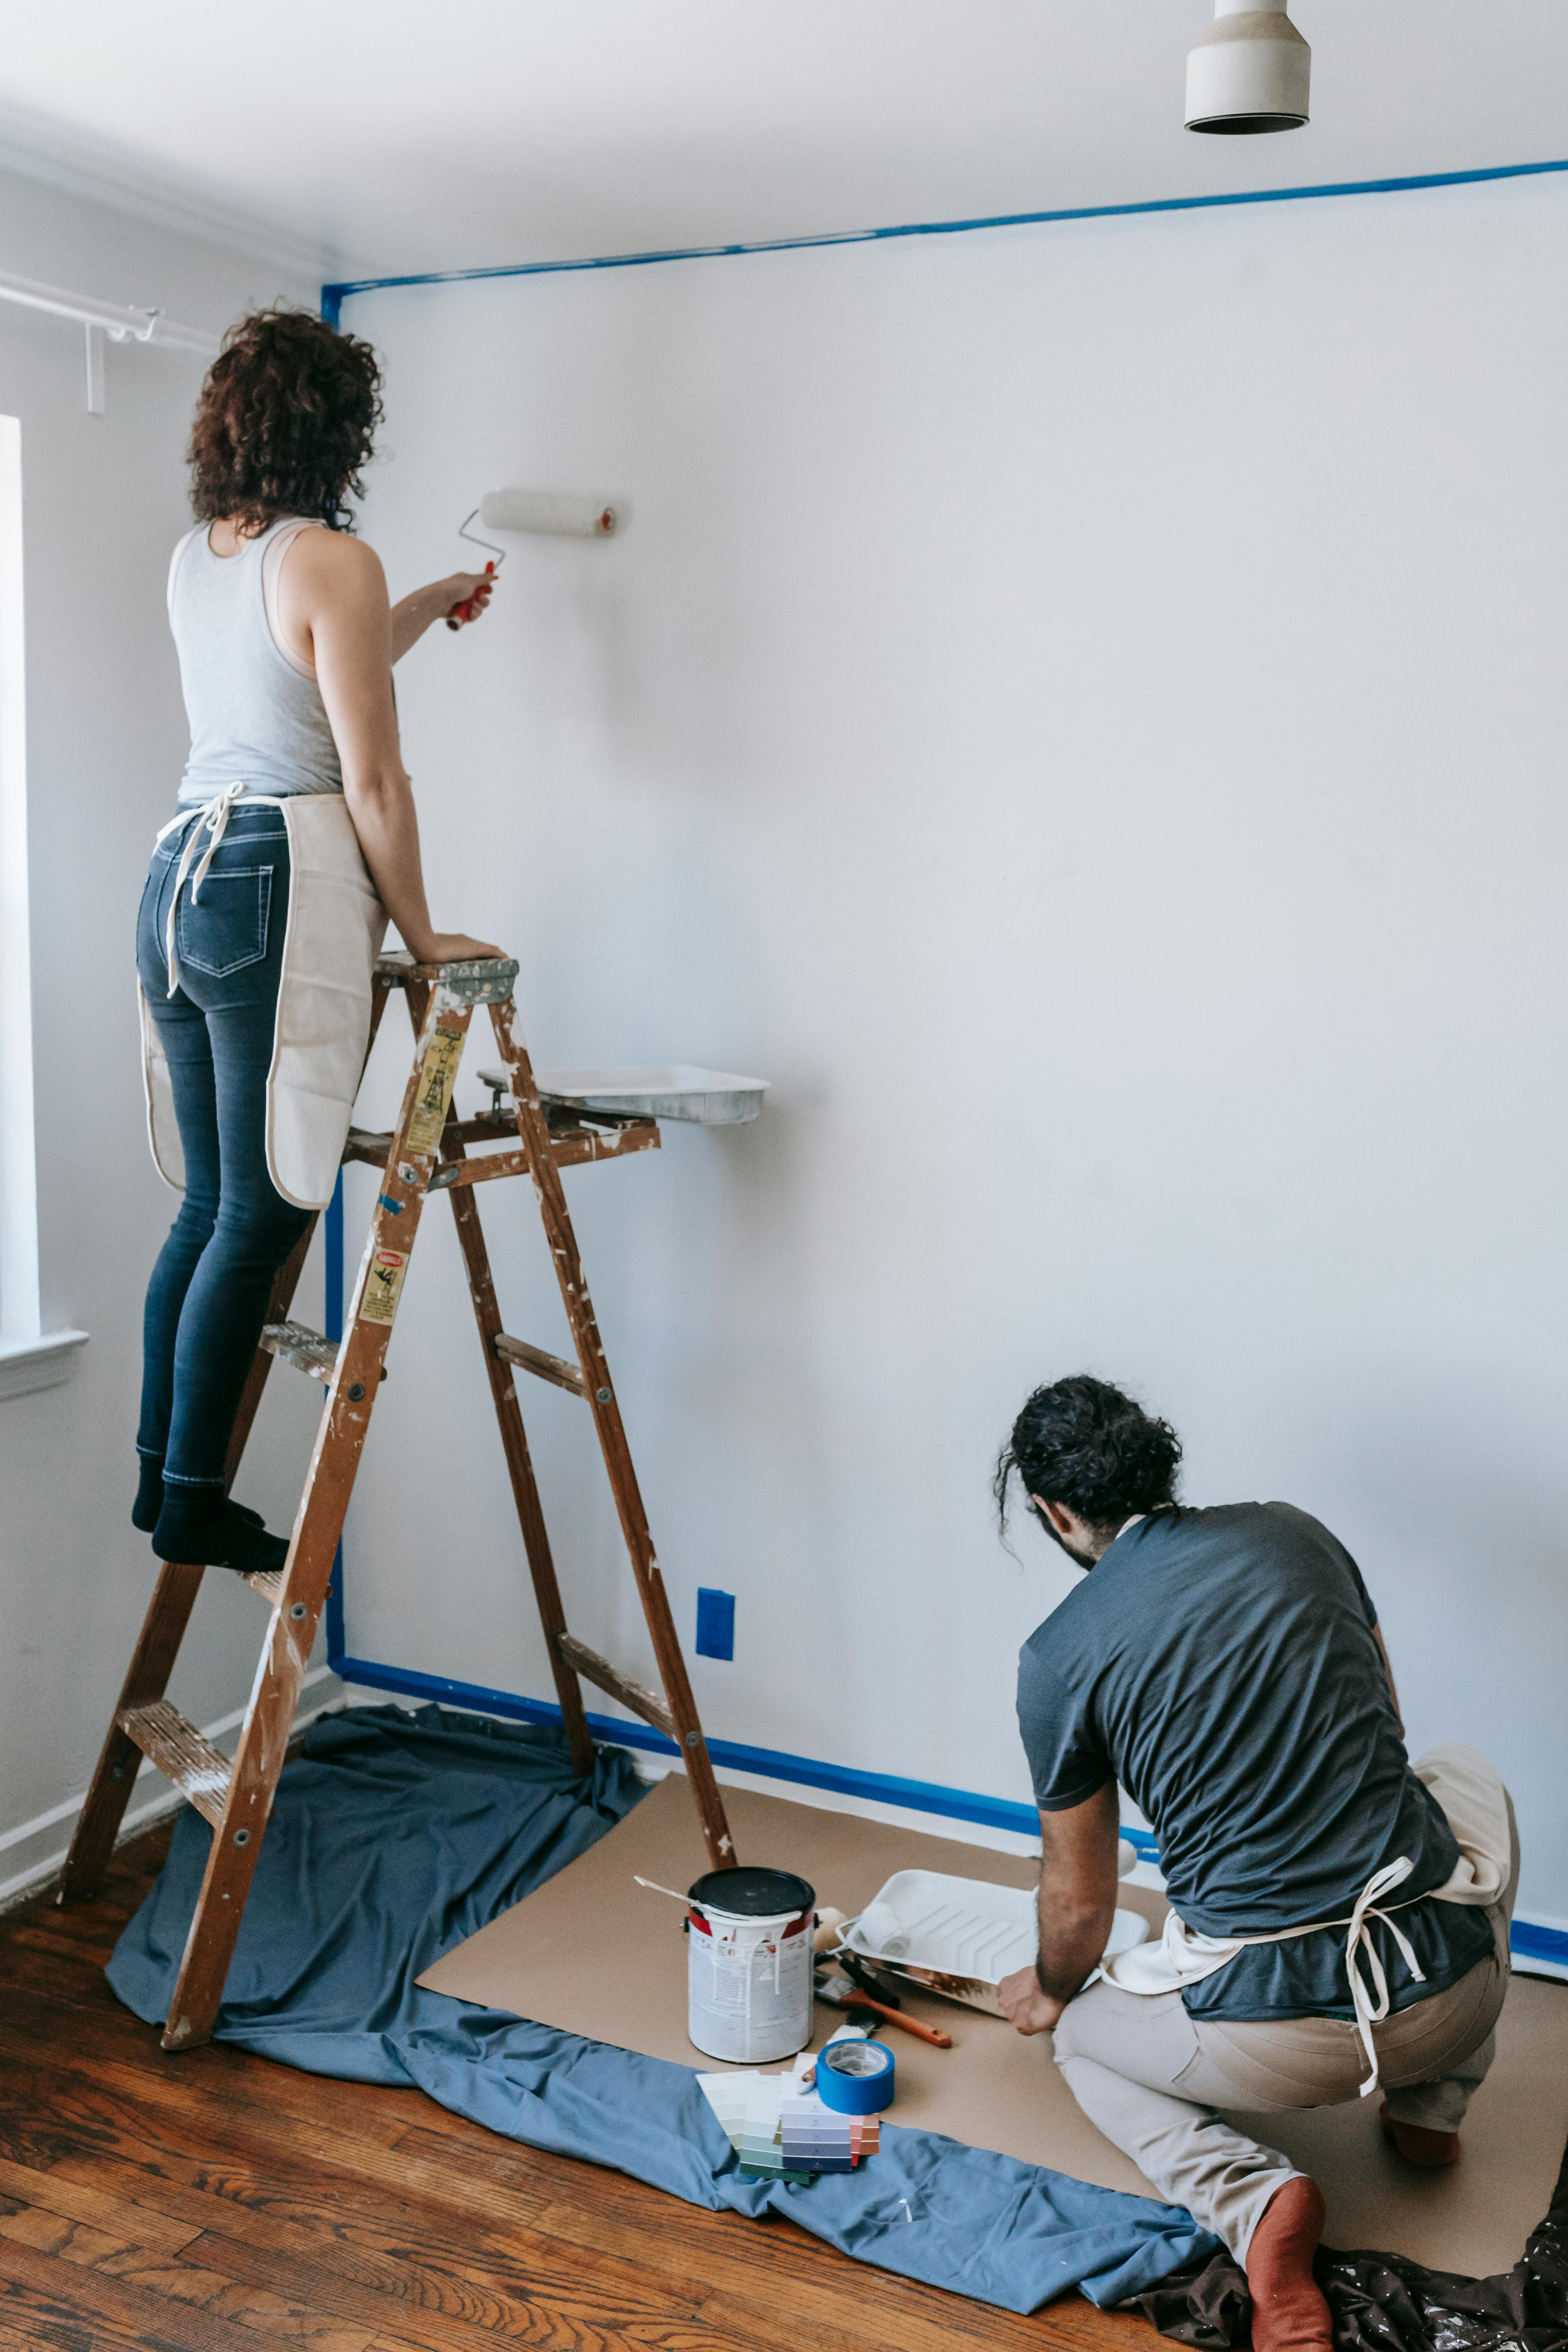 Ralph Lauren Paint : Indigo Denim | Classic living room paint, Paint colors  for living room, Home decor